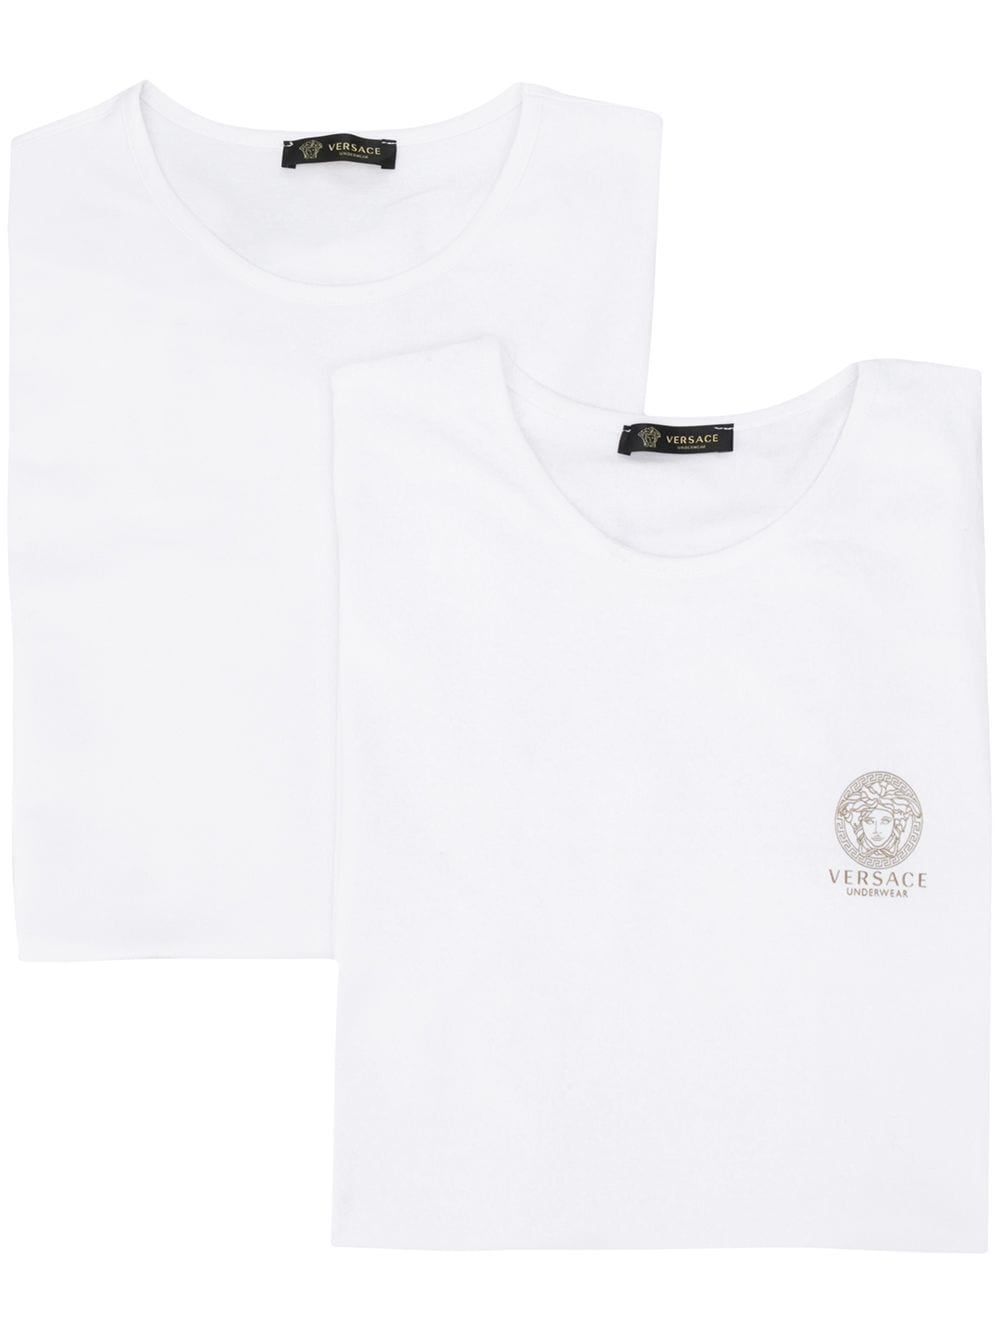 Versace комплект из двух футболок с логотипом Medusa от Versace